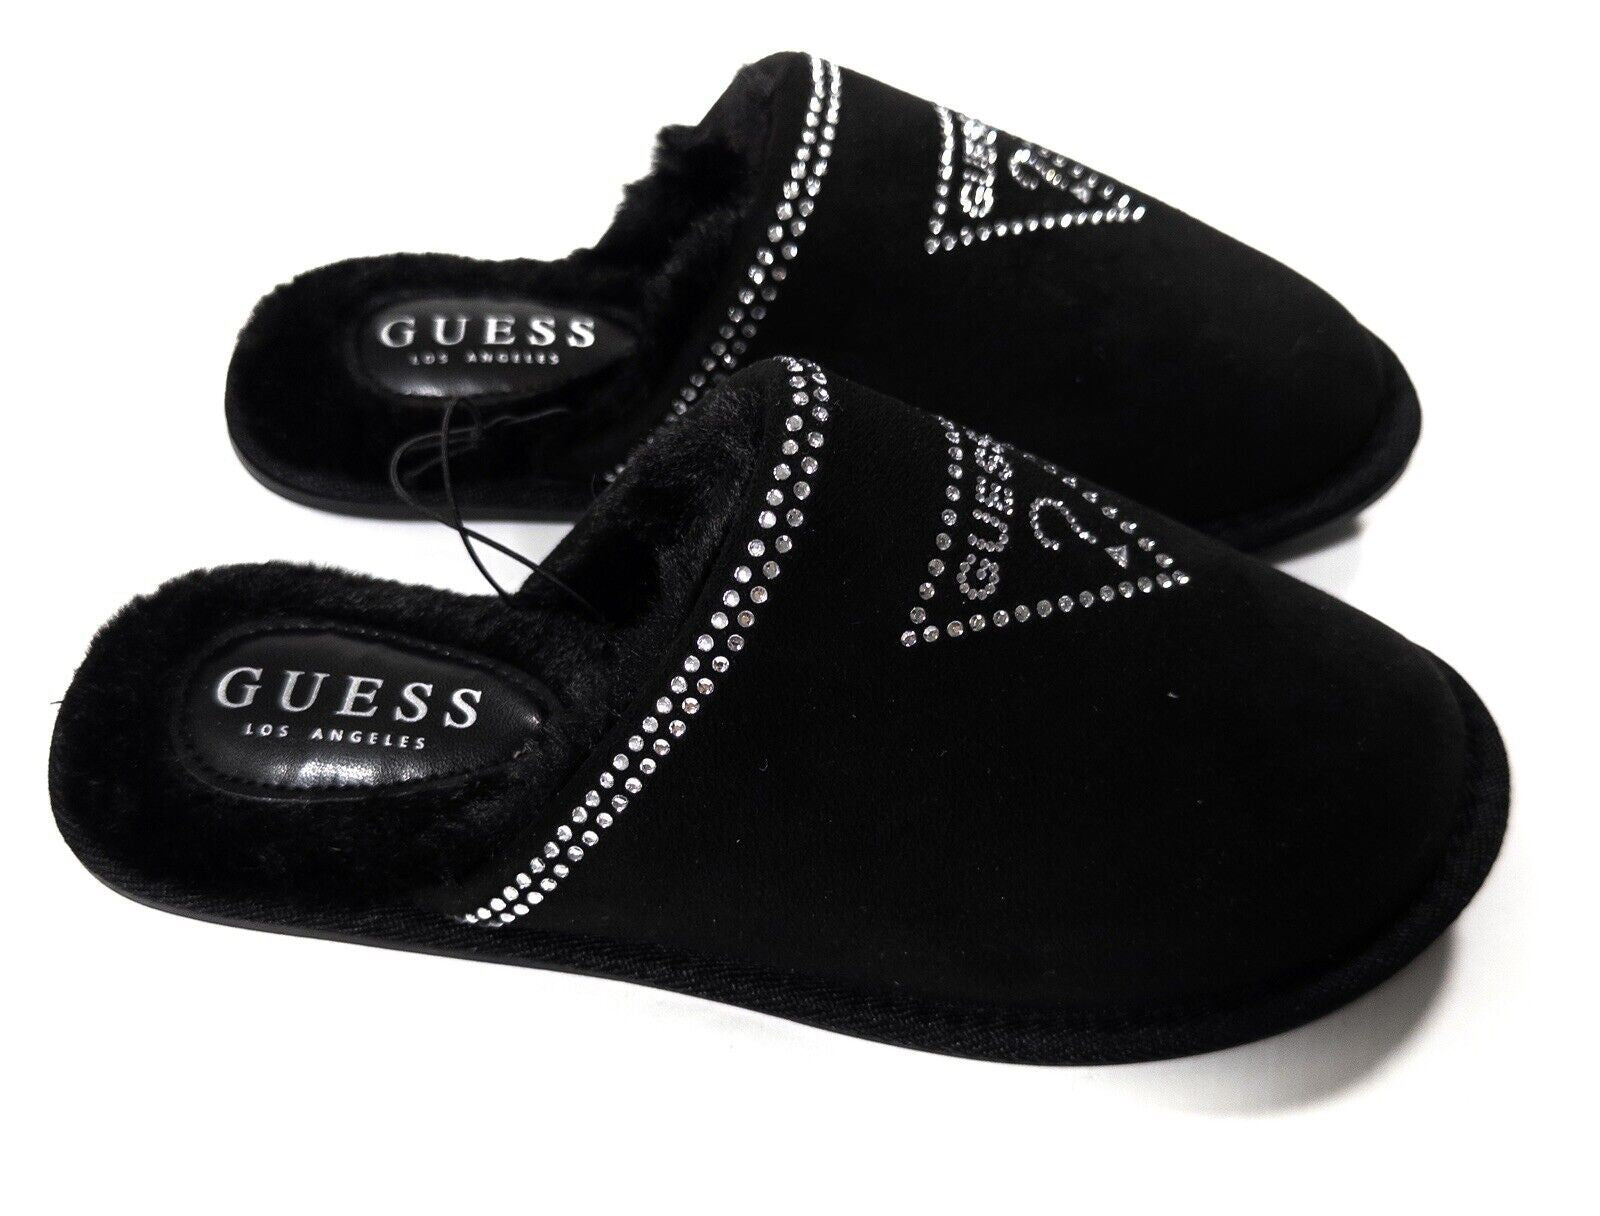 GUESS Women's Black Fluffy Slip On Slippers Size UK 5